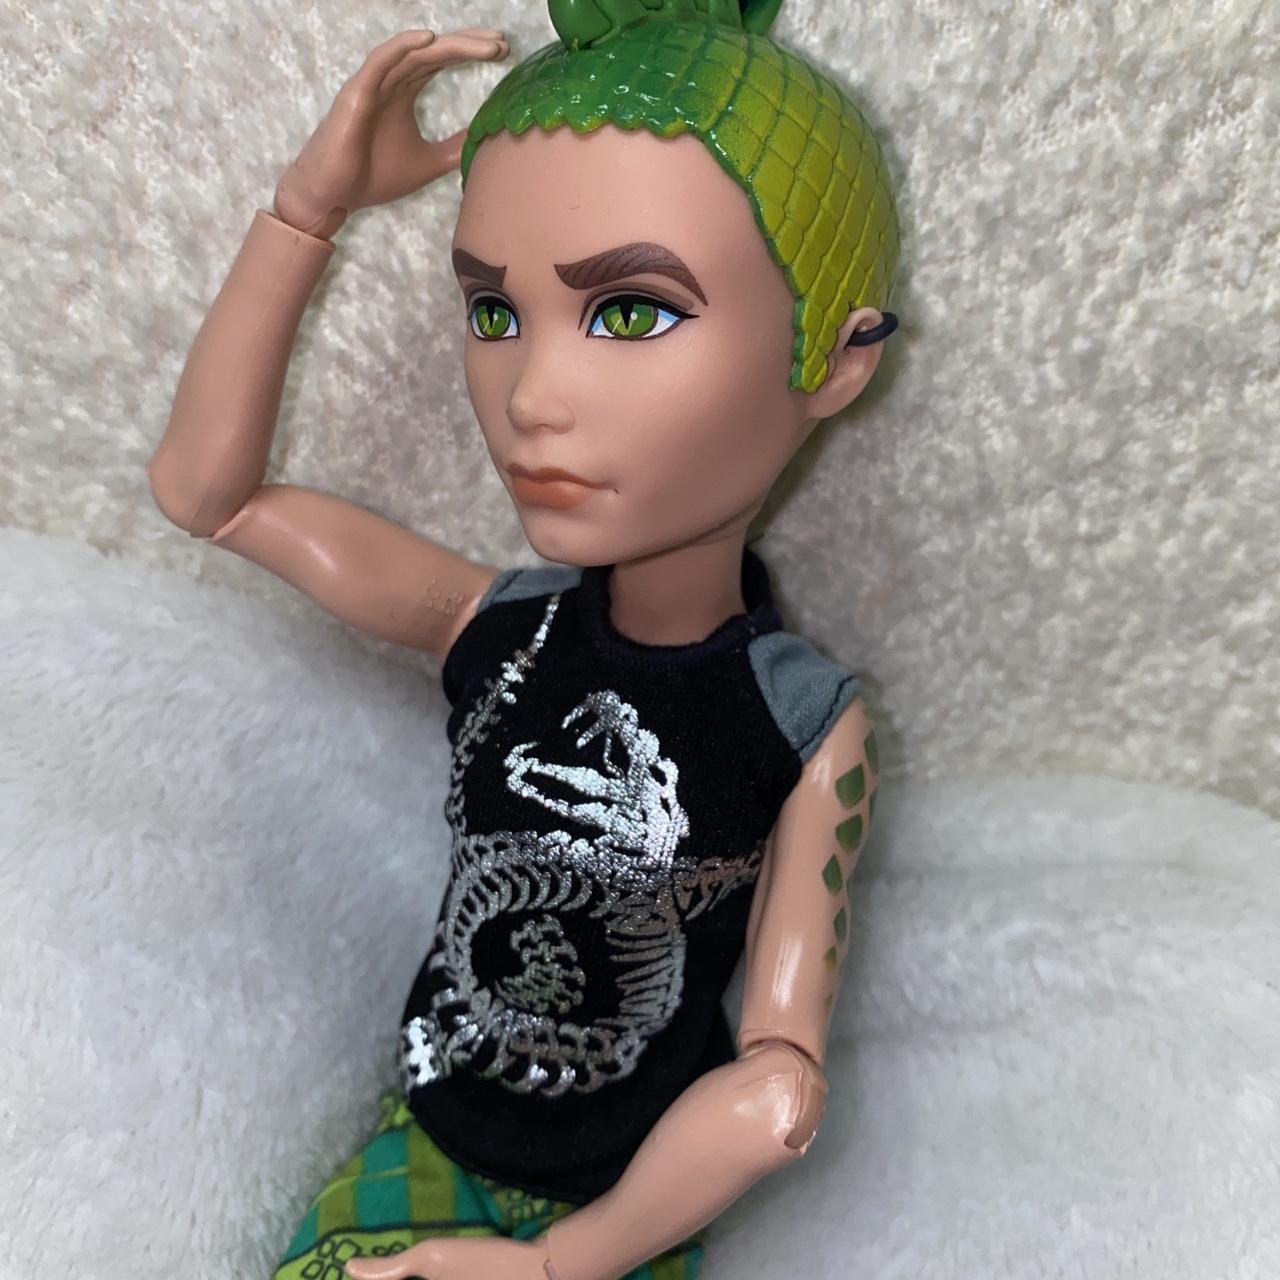 Deuce Gorgon - Monster High Dolls